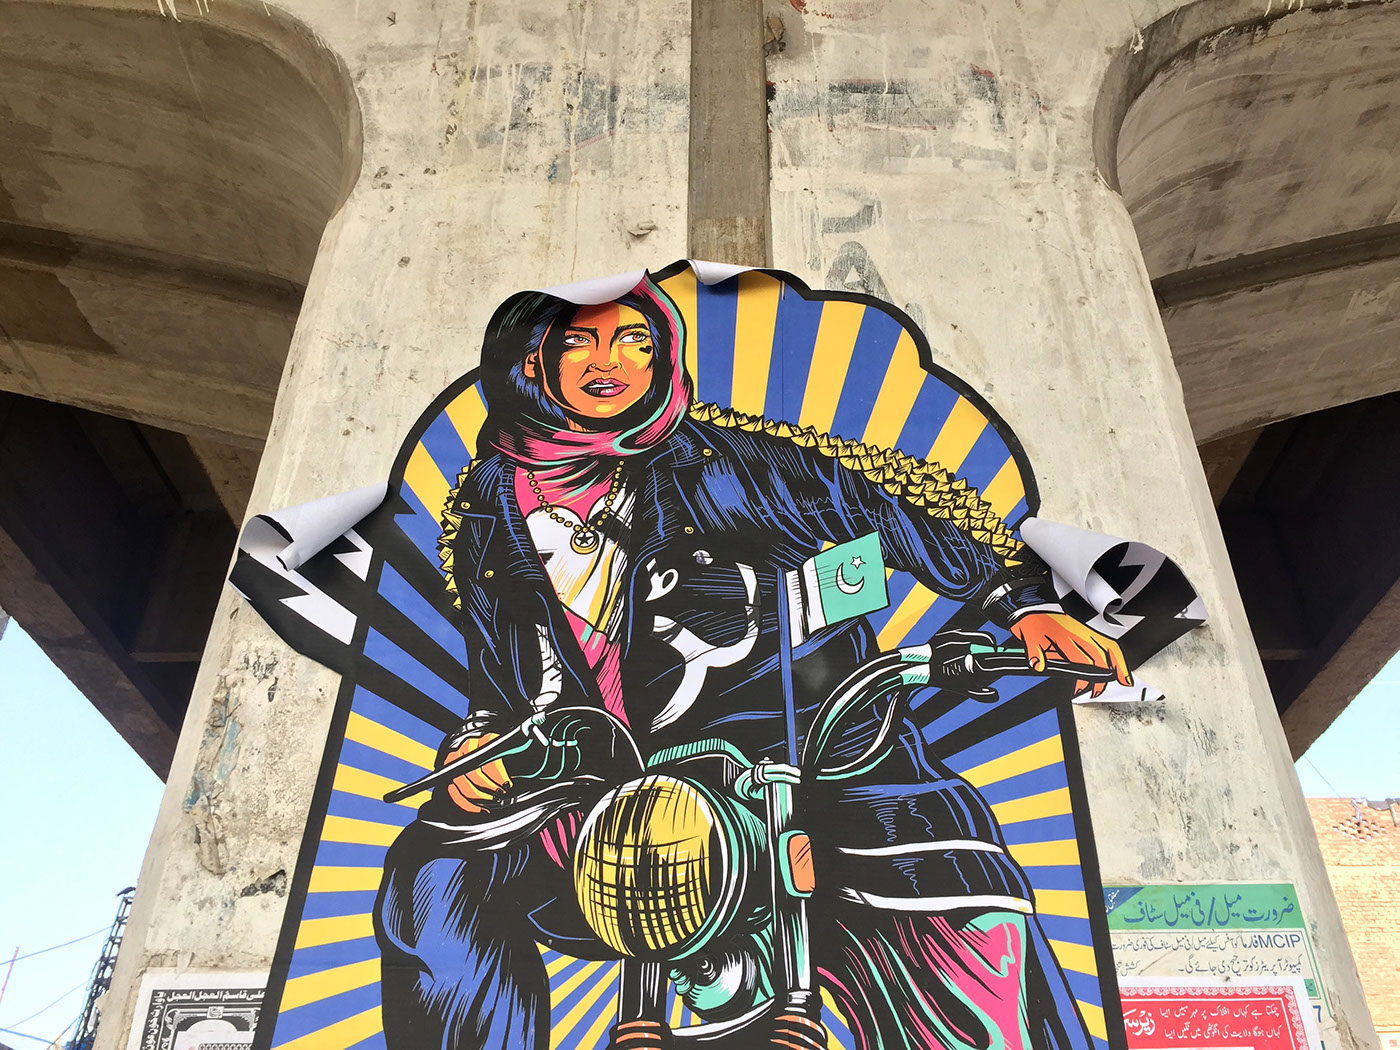 feminist high street clothes line Graffiti women empowerment